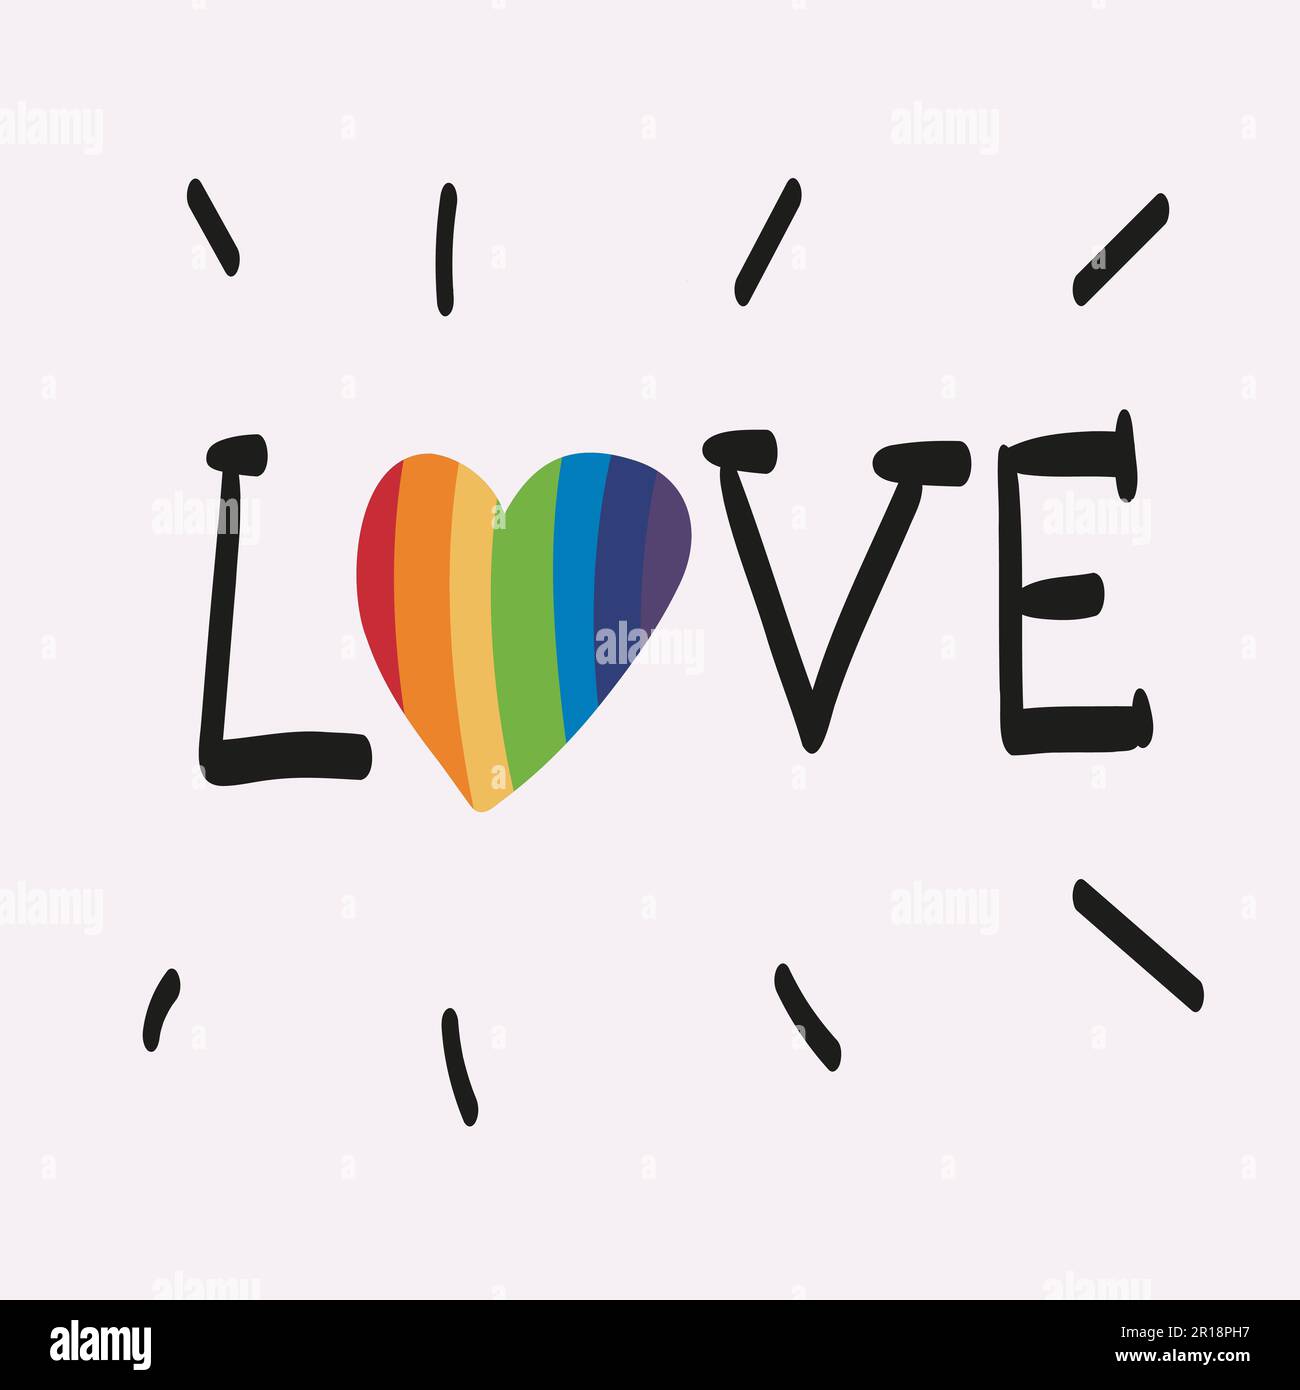 El amor es amor. El amor siempre gana. Ilustración vectorial del desfile del Orgullo. Comunidad LGBT Ilustración del Vector